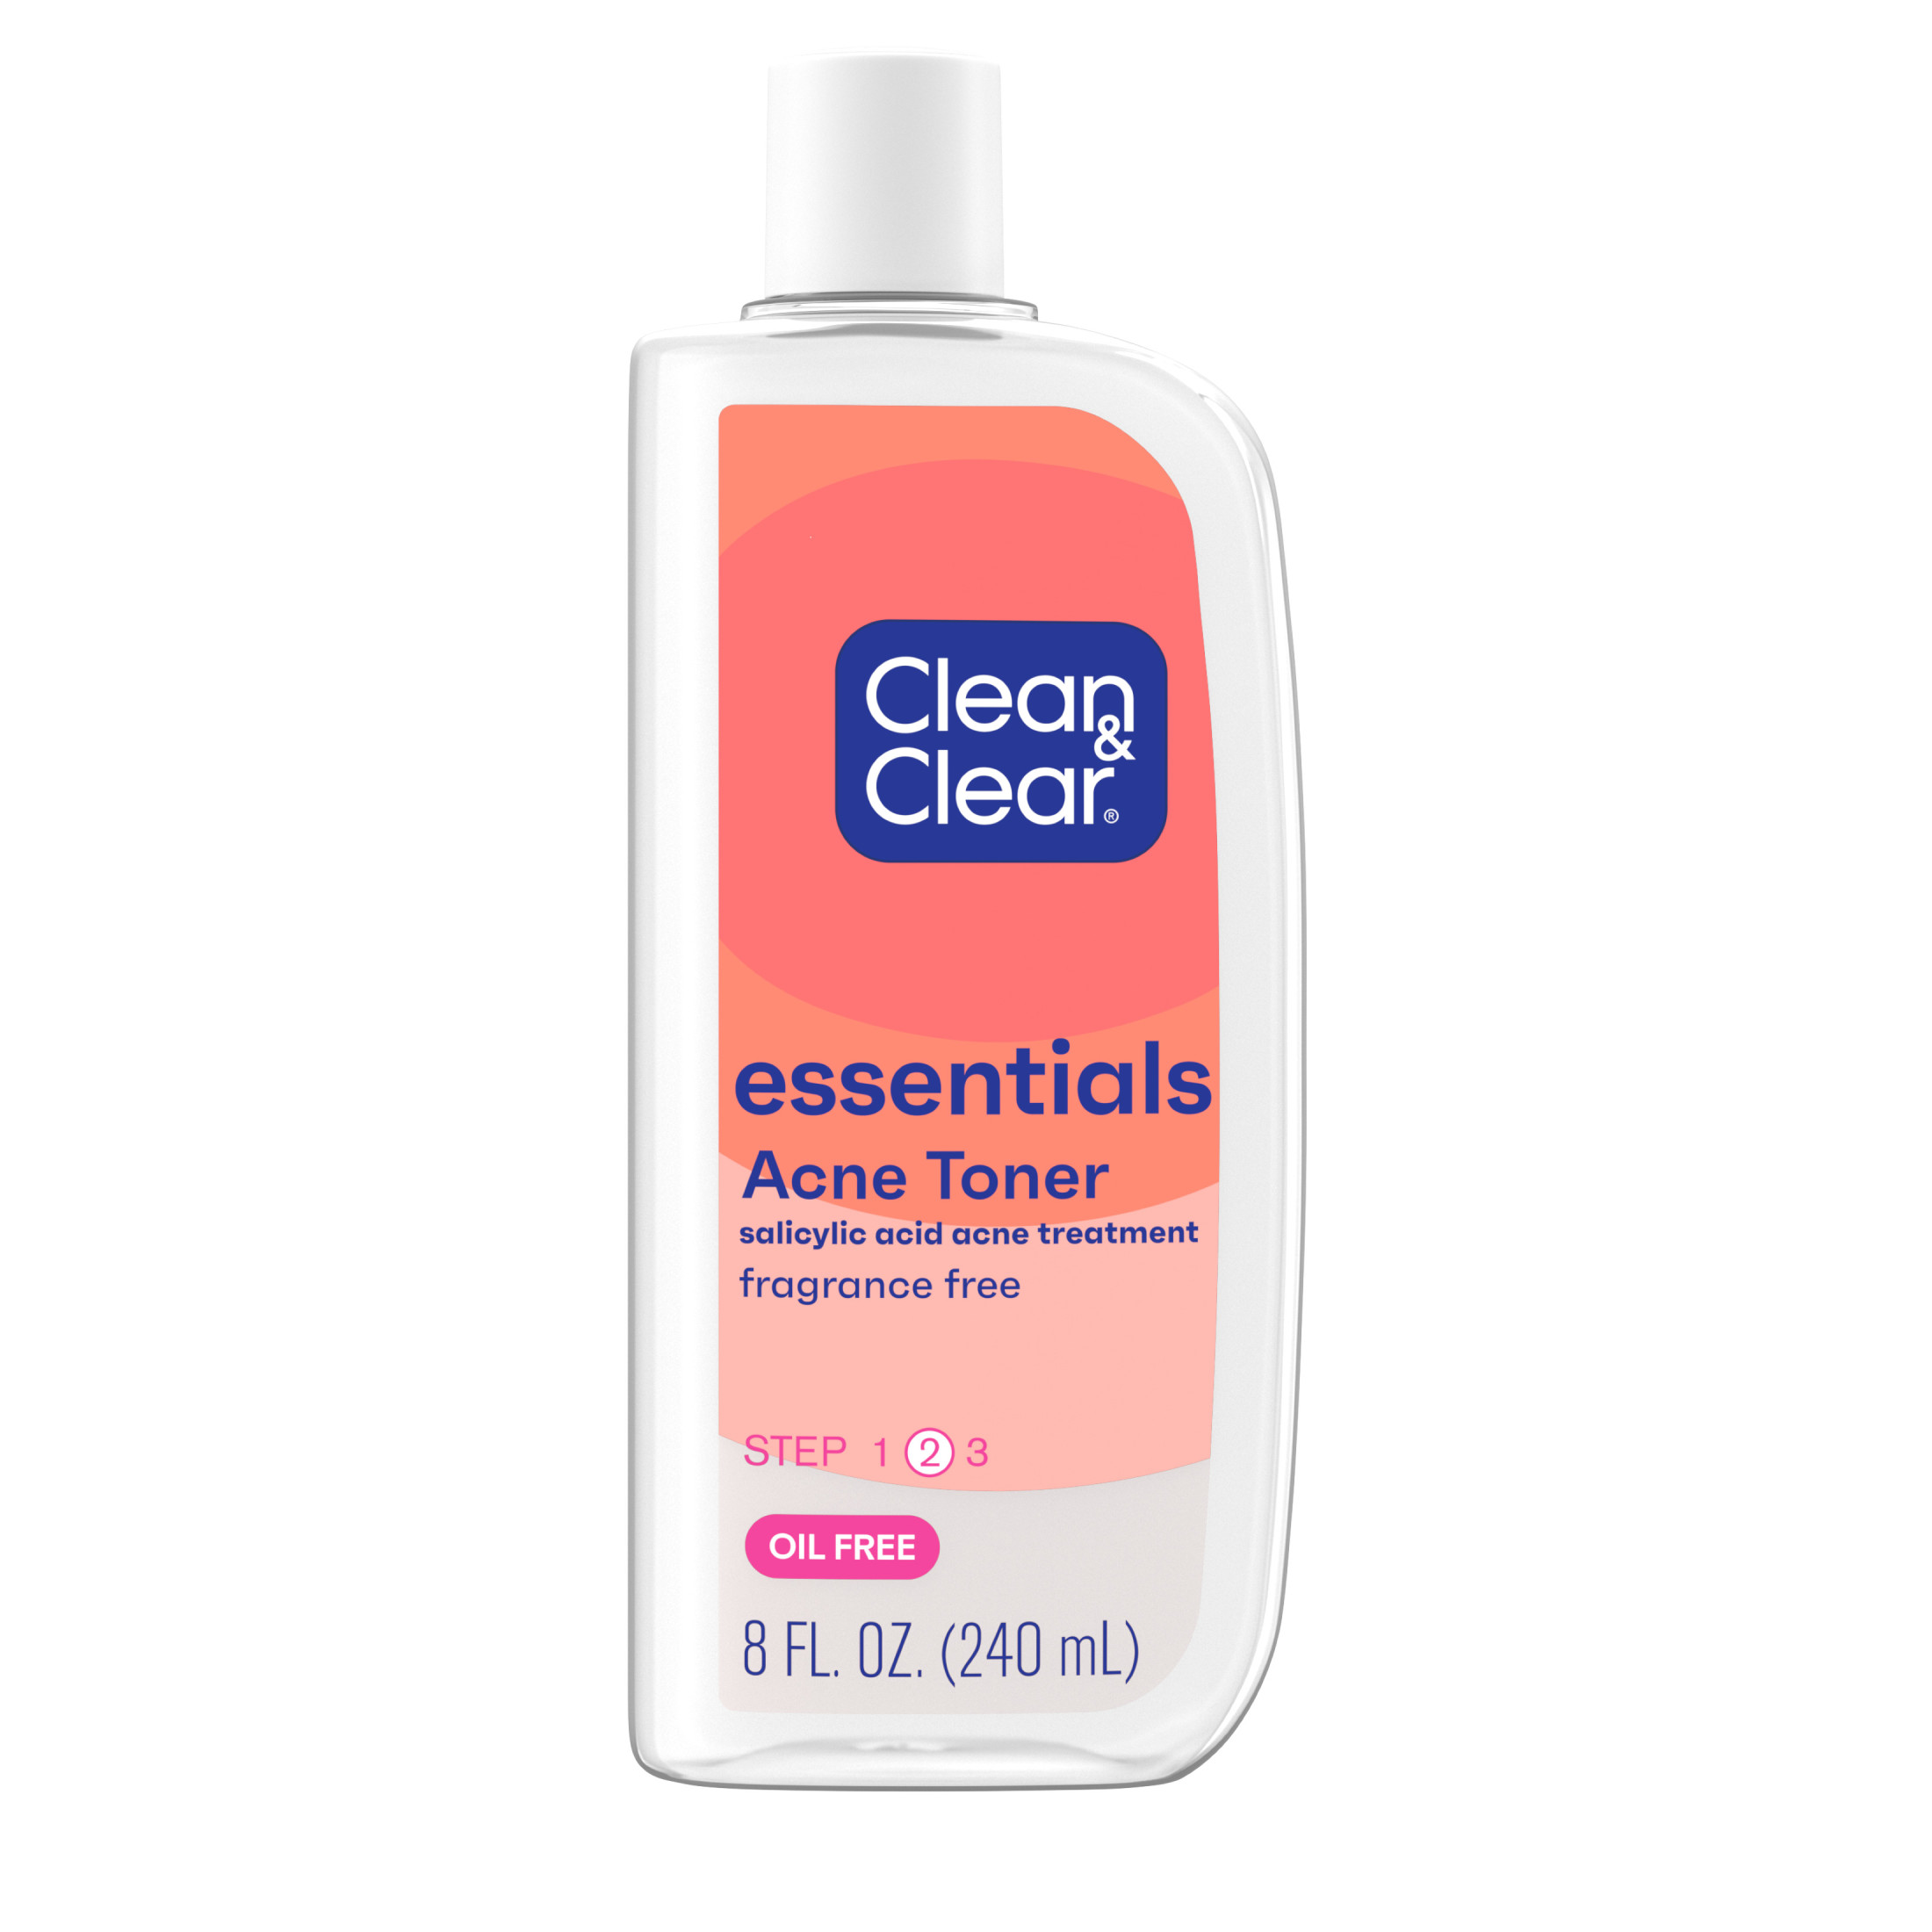 Clean & Clear Essentials Oil-Free Acne Toner, Salicylic Acid, 8 fl. oz - image 1 of 10